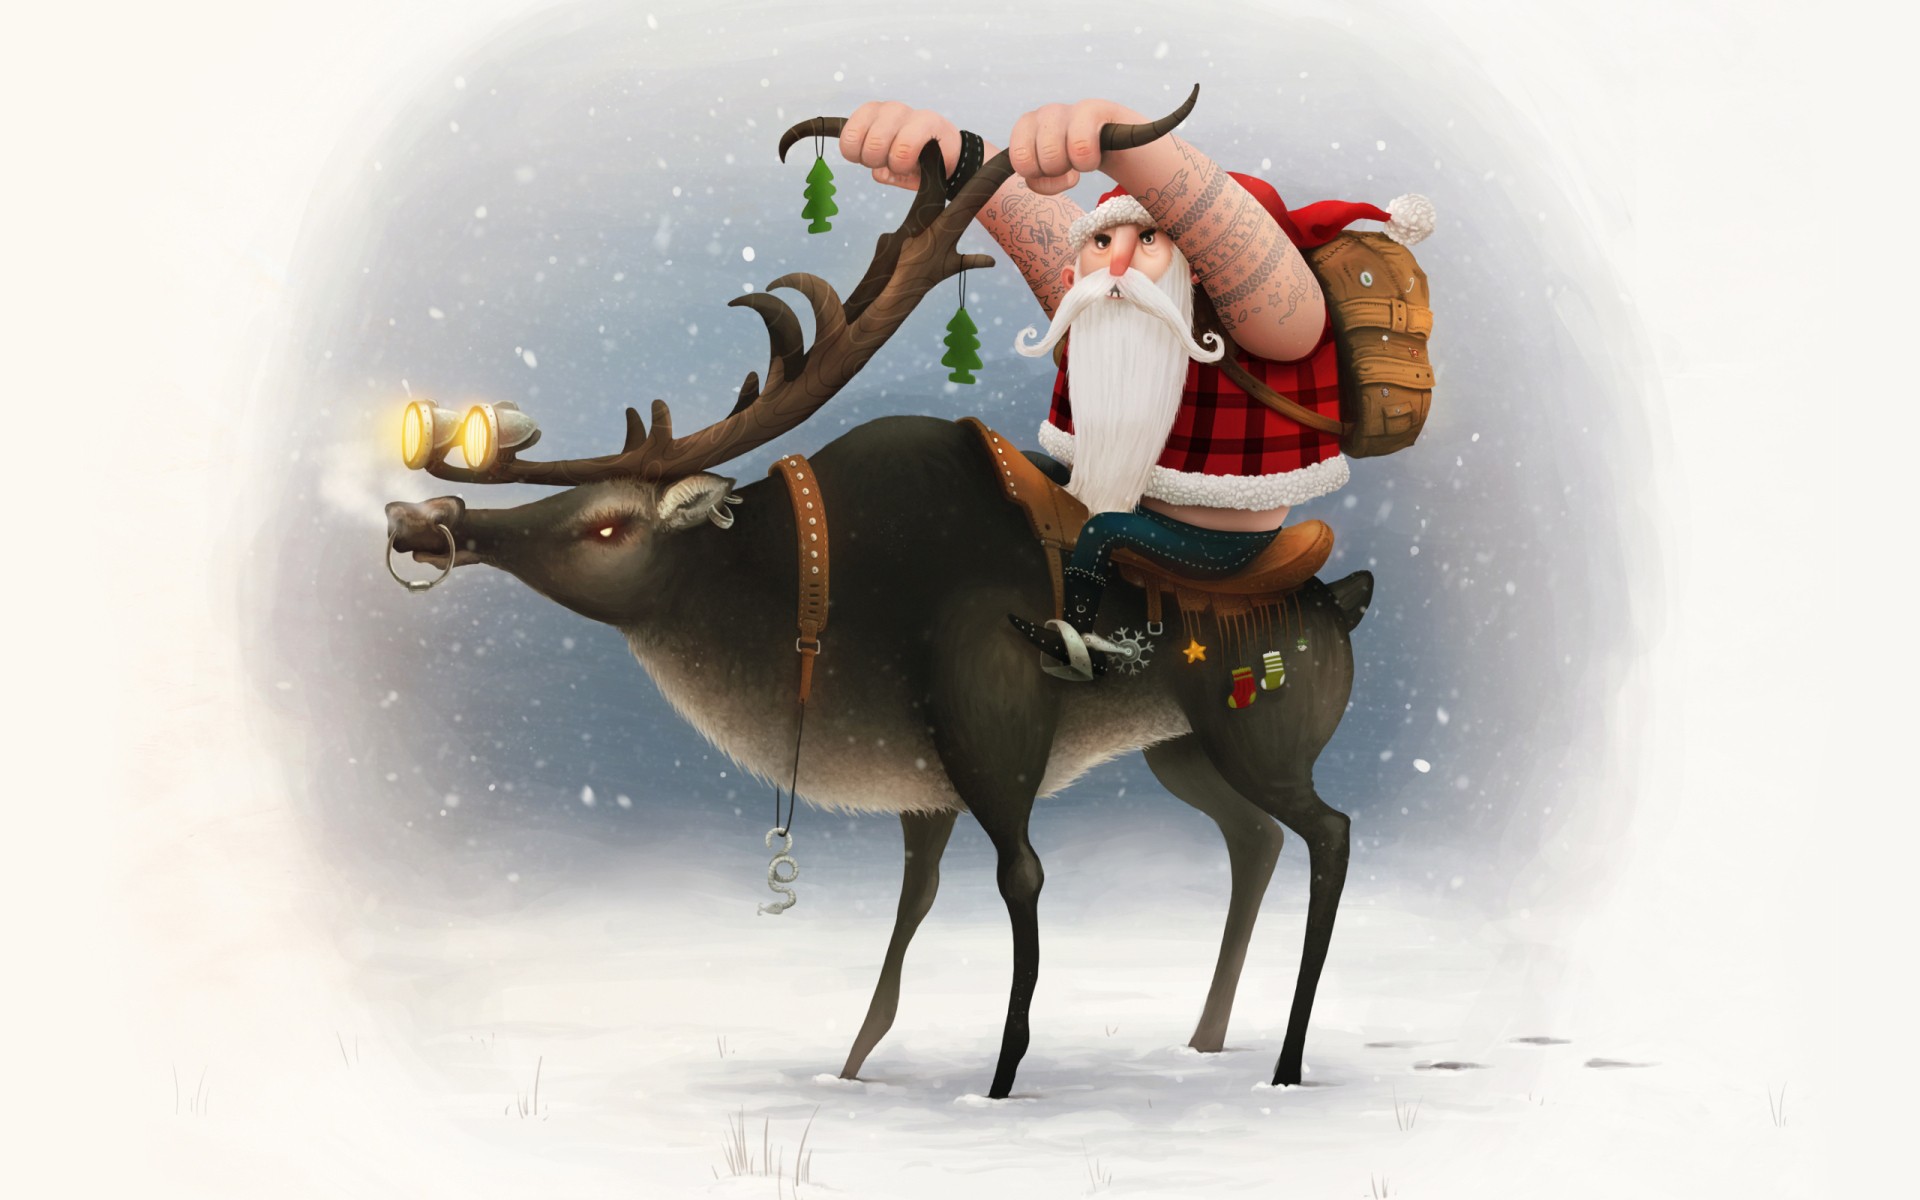 General 1920x1200 Santa Claus biker simple background digital art deer